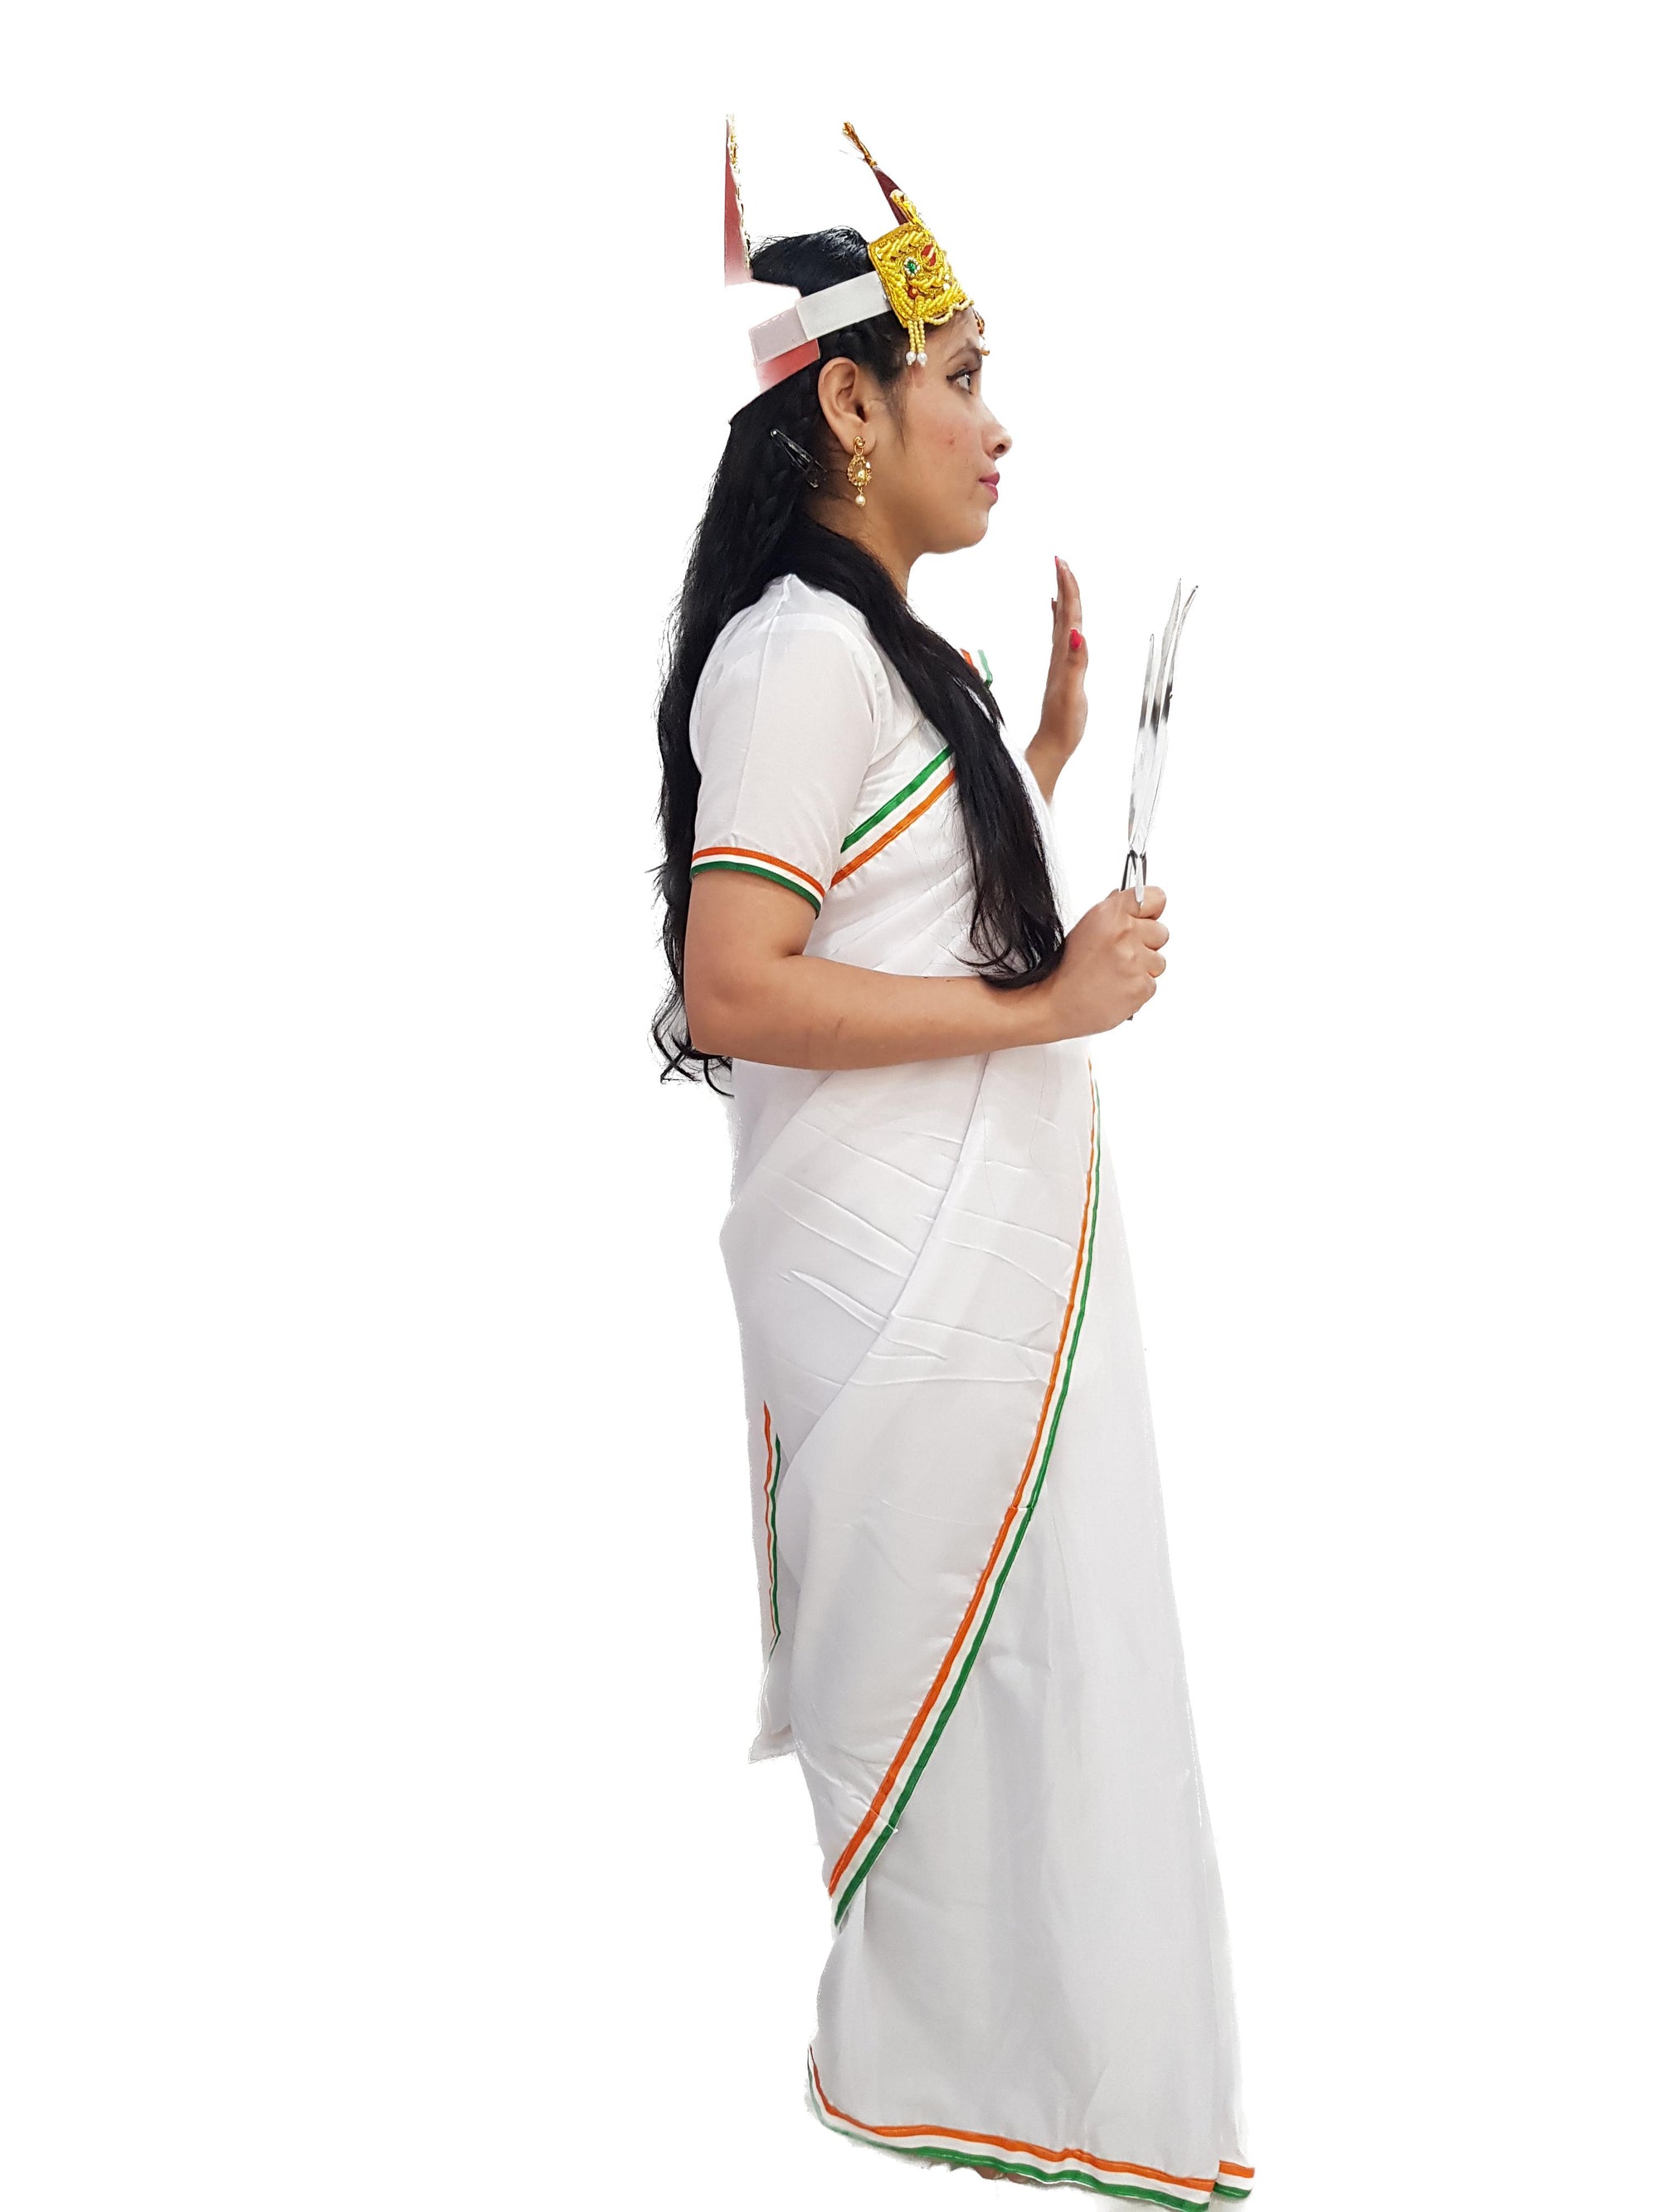 KAKU FANCY DRESSES National Hero Bharat Mata Costume -White, 1-2 Years, For  Girls Kids Costume Wear Price in India - Buy KAKU FANCY DRESSES National  Hero Bharat Mata Costume -White, 1-2 Years,